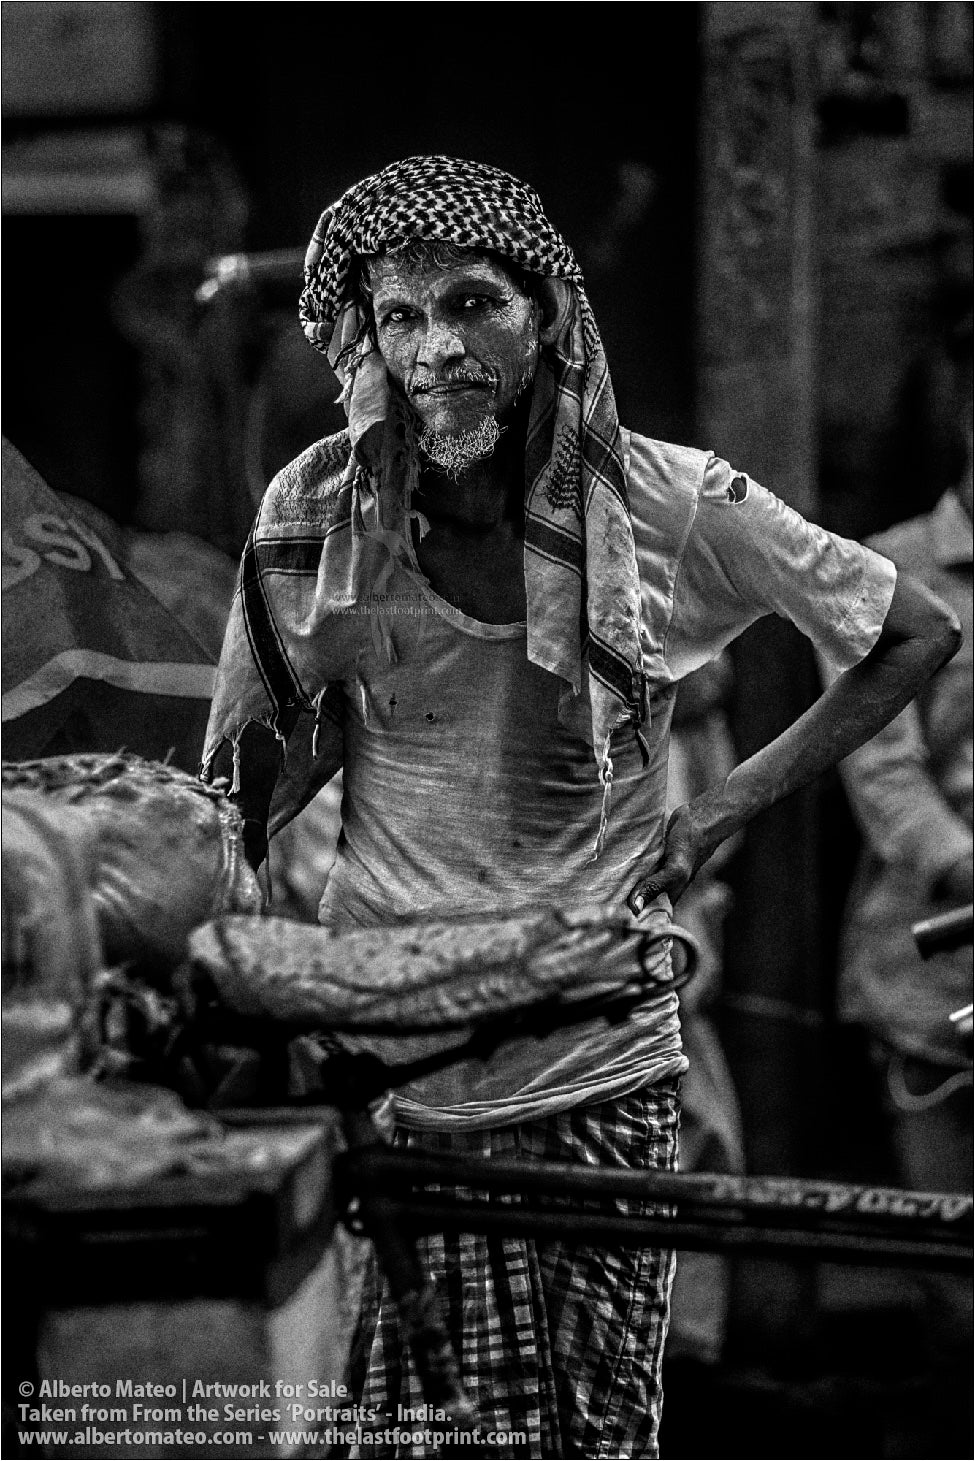 Portrait of Porter, Bara Bazar, Kolkata, India.